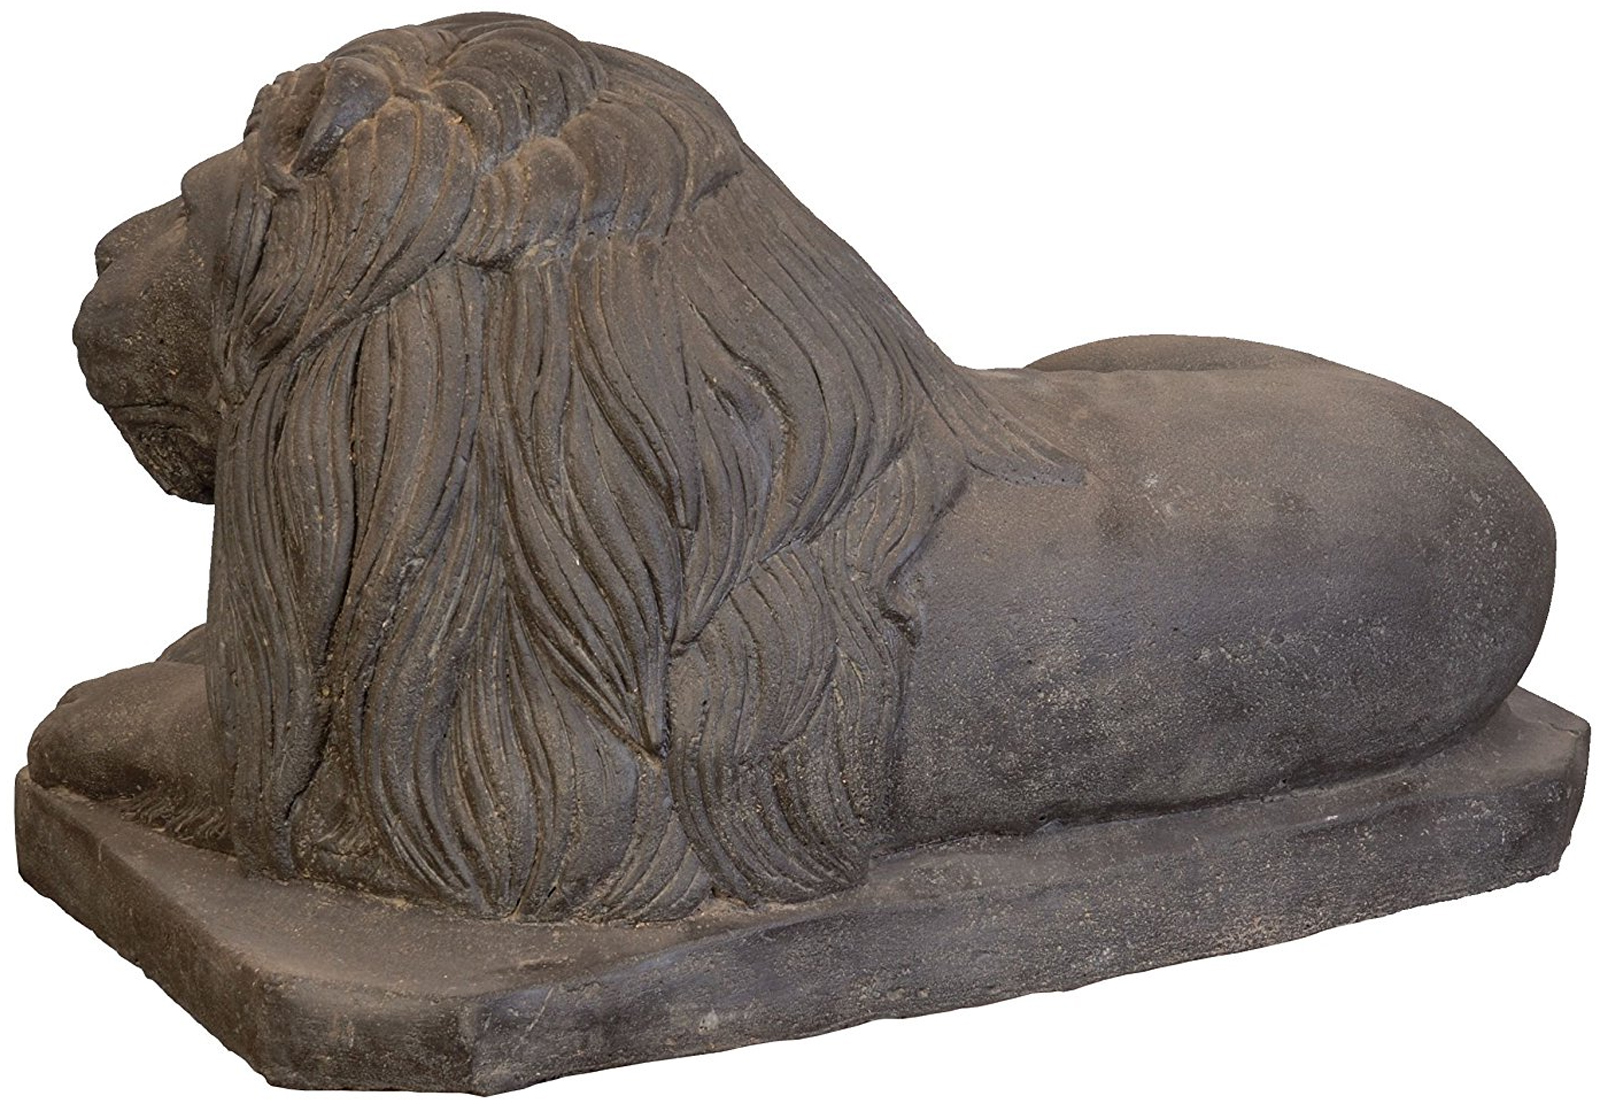 Löwenfigur Steinguss 80cm Rechts